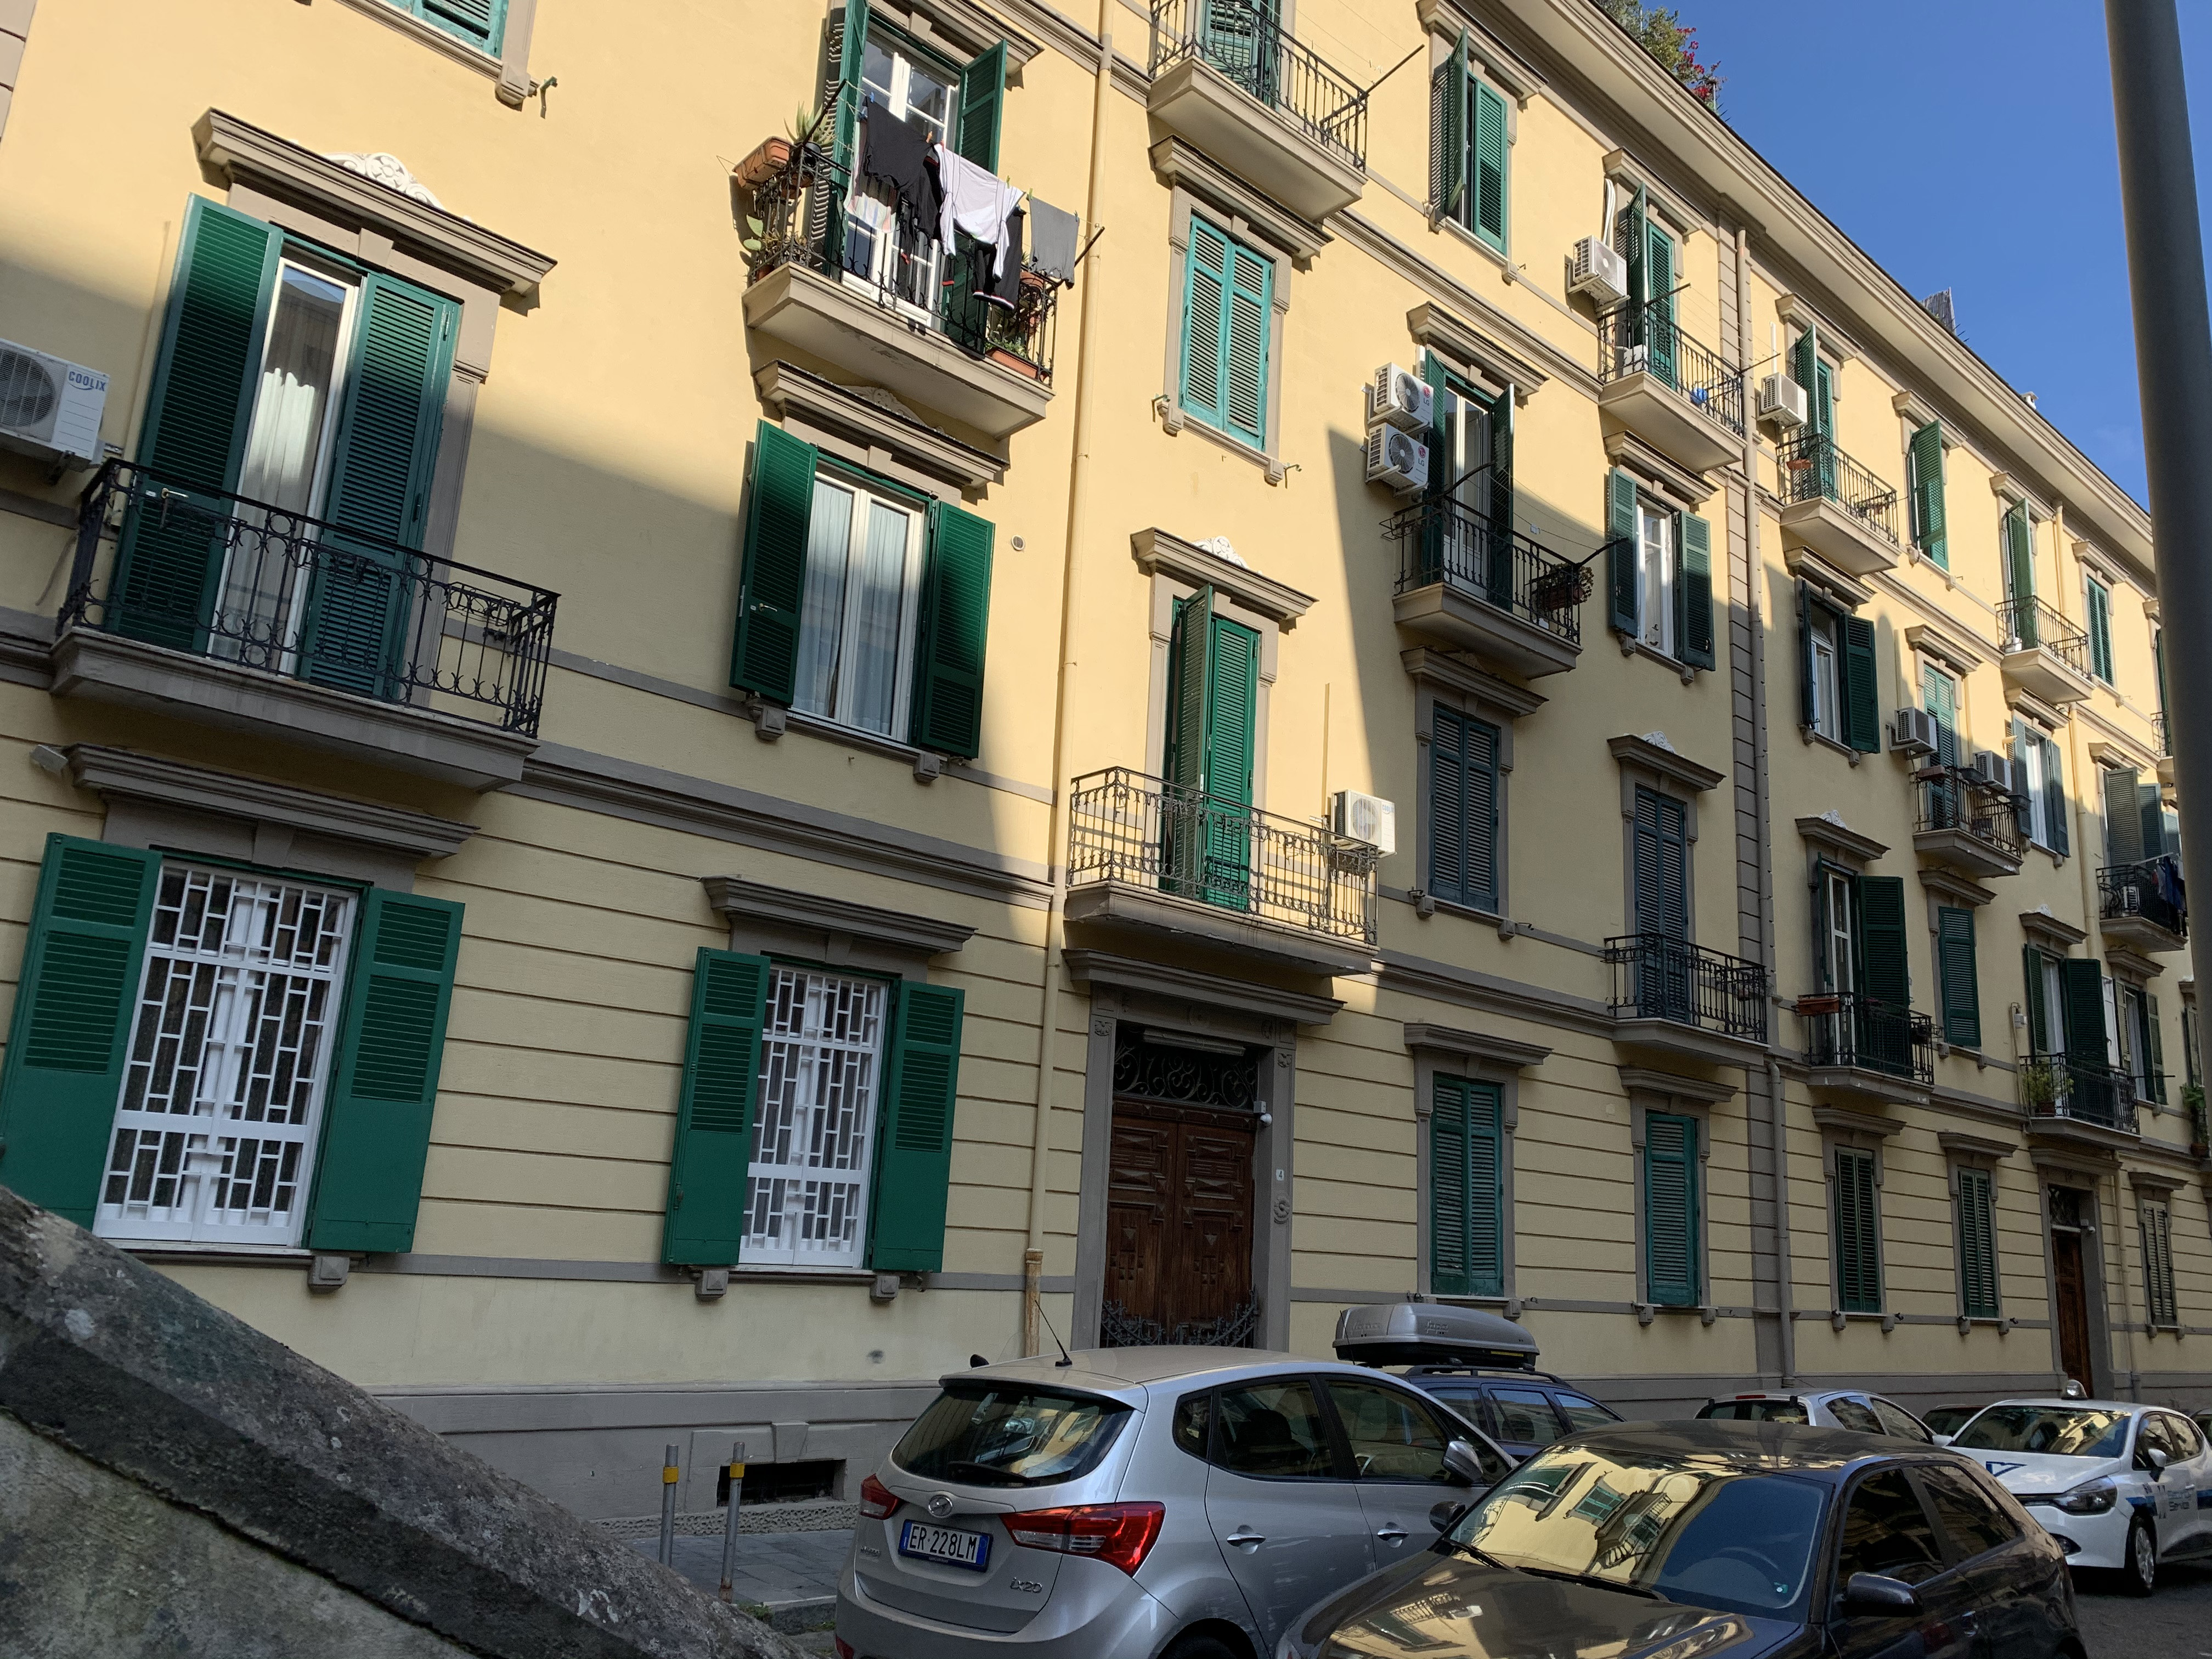 [Palazzo privato in via Antonio Ludovico Antinori, 2-4] (palazzo, privato) - Napoli (NA)  (XX)